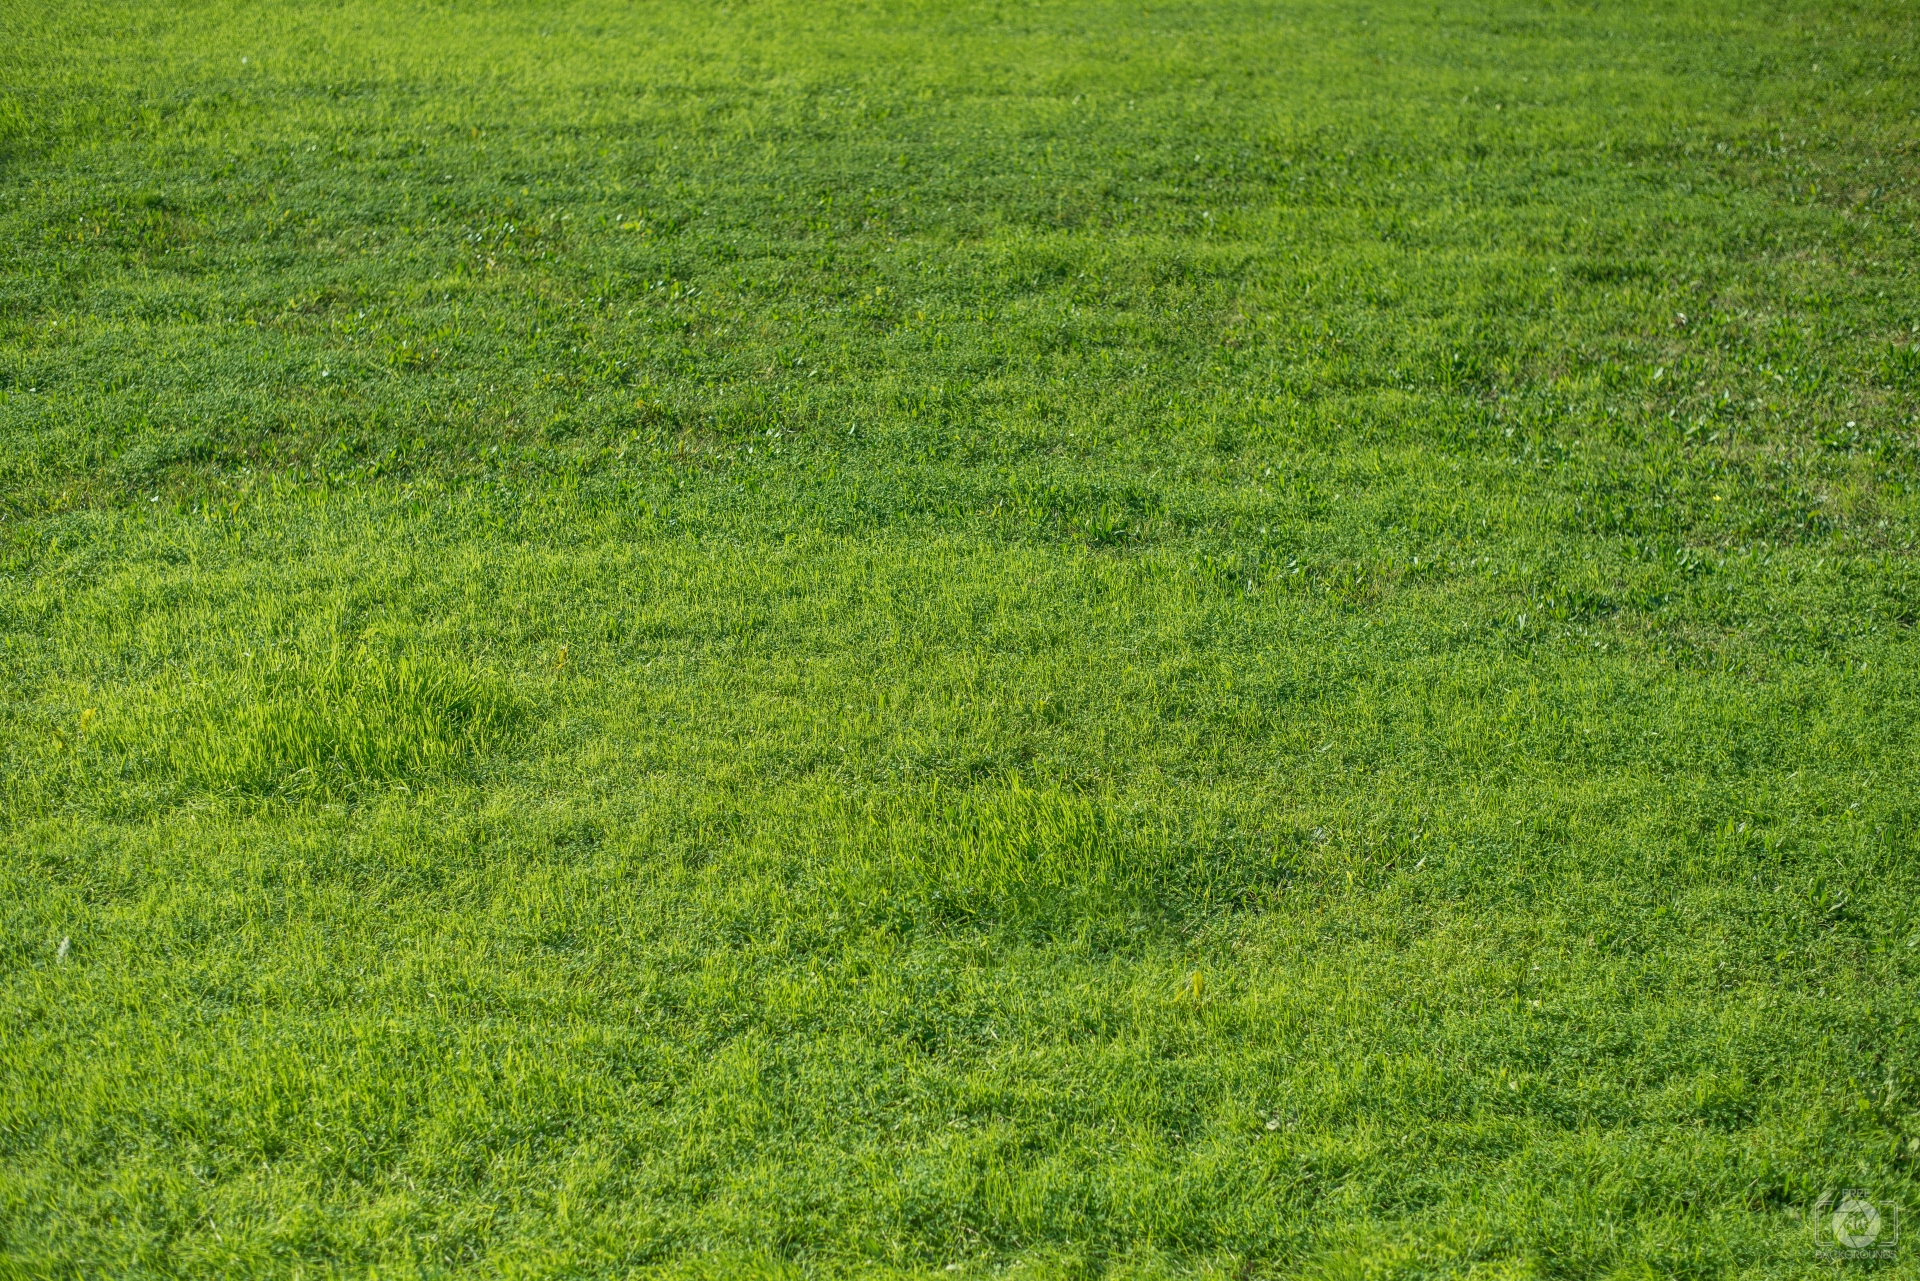 Grass texture photo